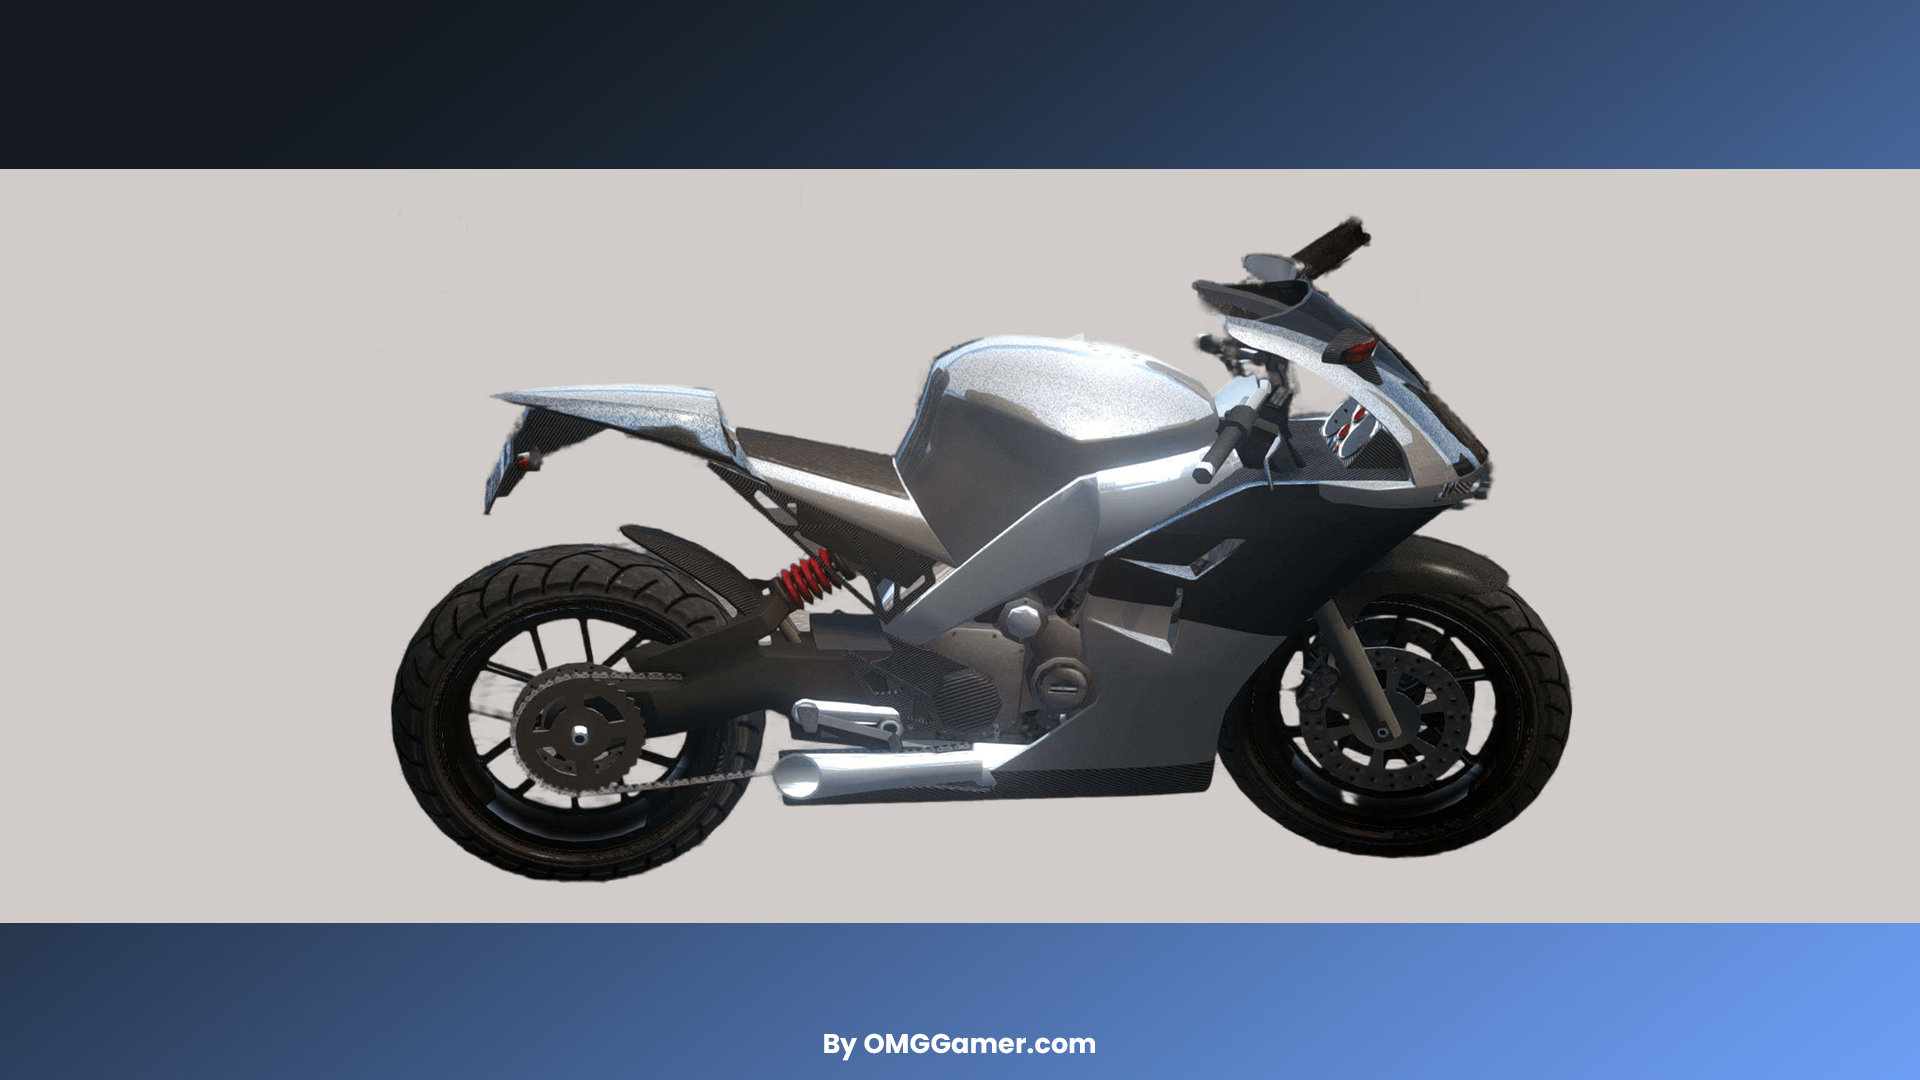 Nagasaki Carbon RS: GTA 5 Motorcycle